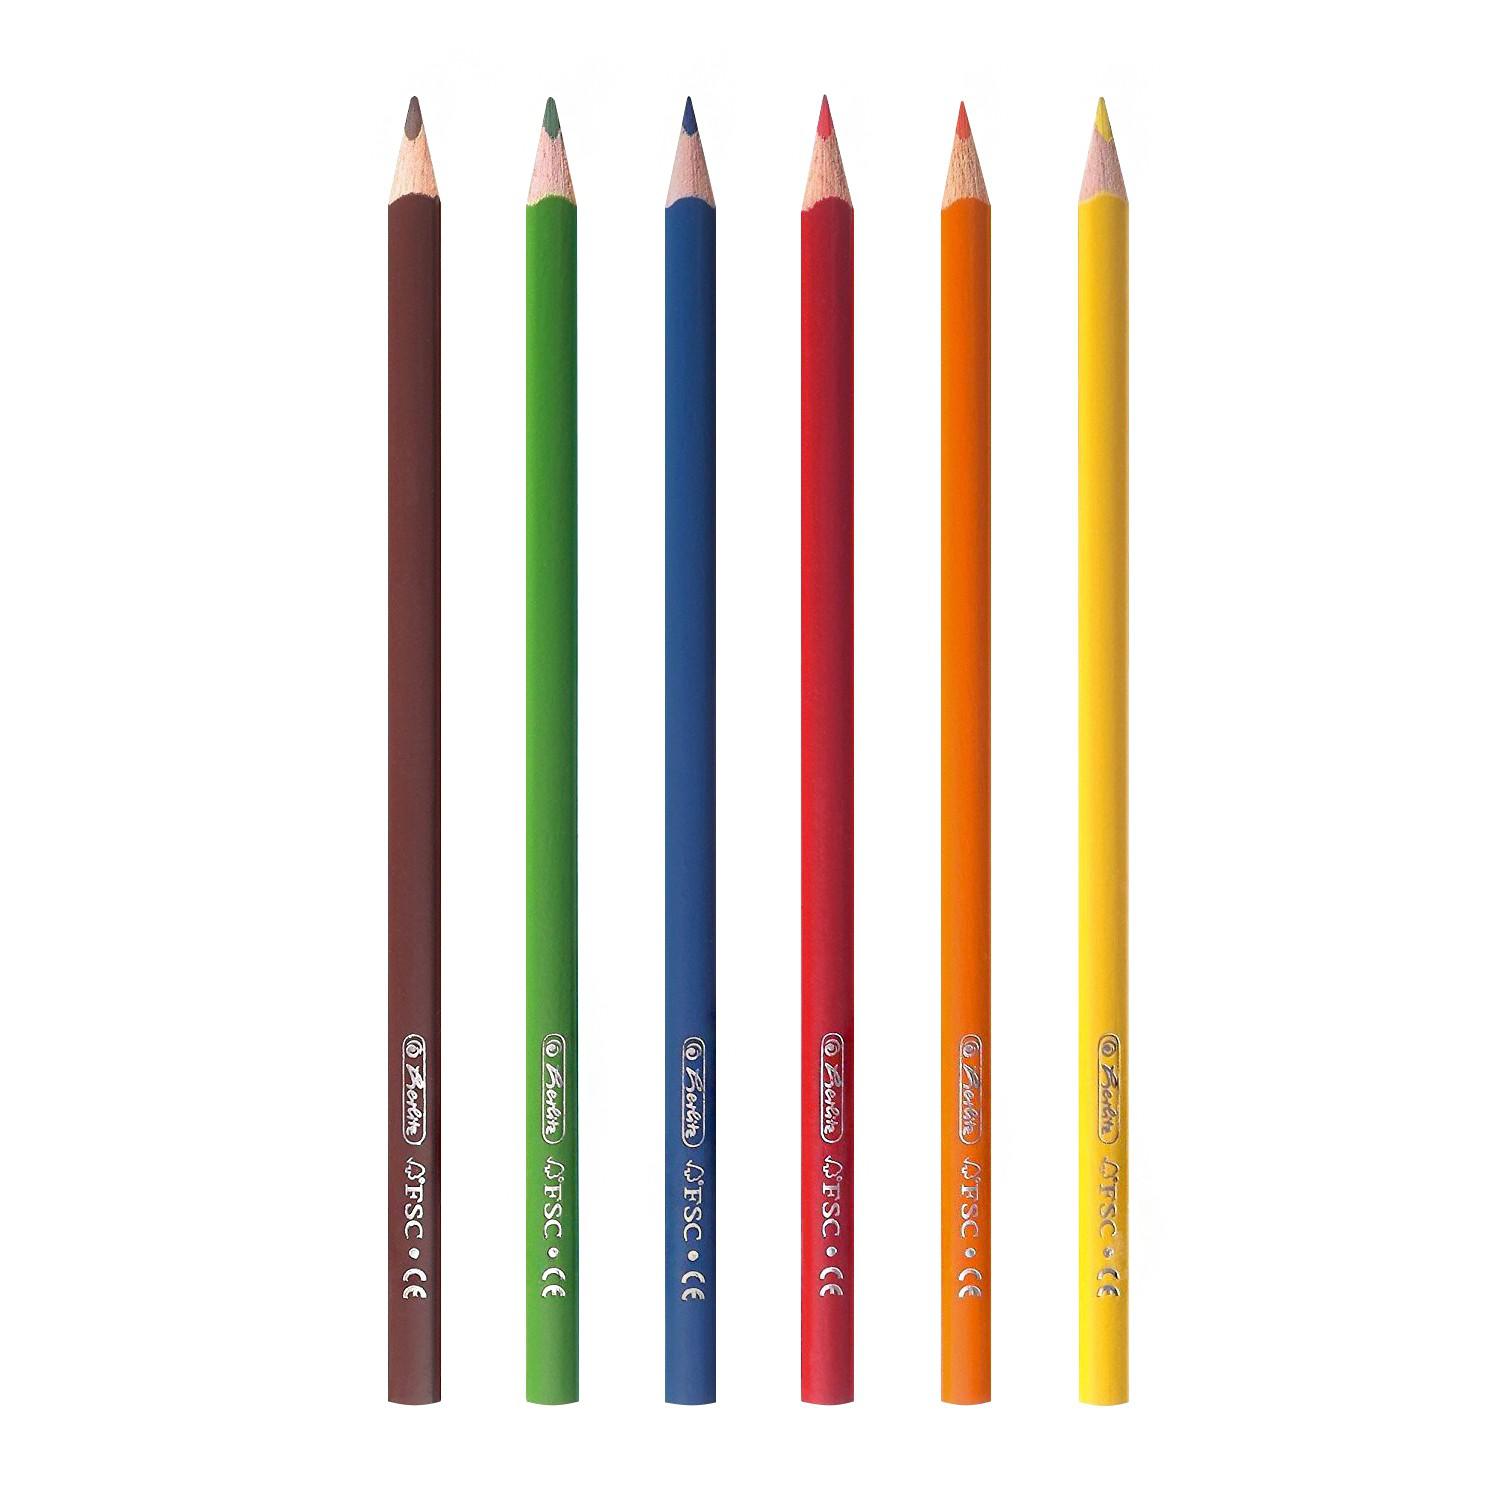 Цветные карандаши 6. Herlitz карандаши трехгранные. Цветные карандаши трехгранные Herlitz. Цветные карандаши 6 цветов. 6 Основных цветов карандашей.